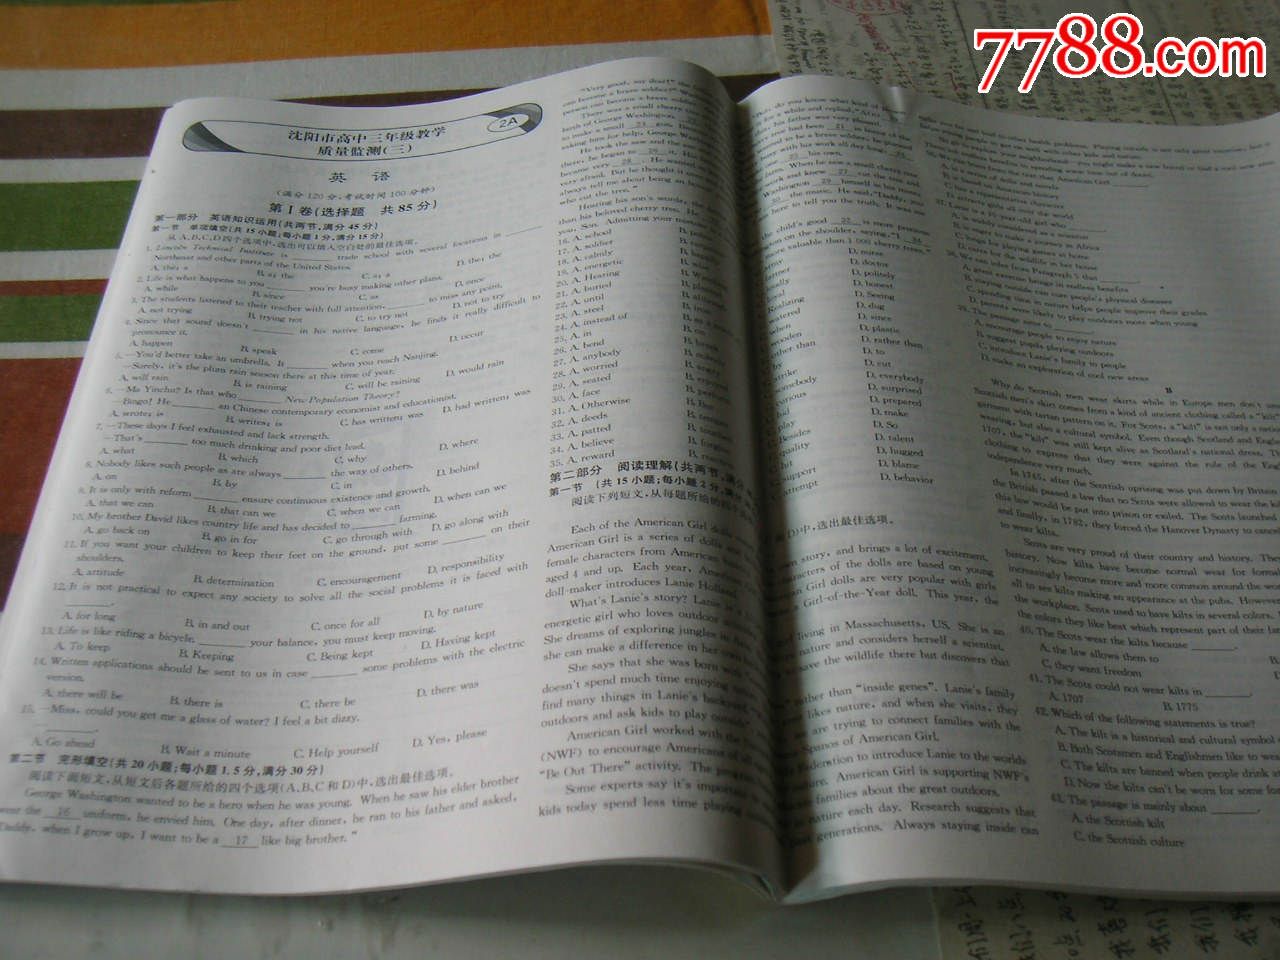 【新课标,天利38套】2013辽宁省高考模拟试题